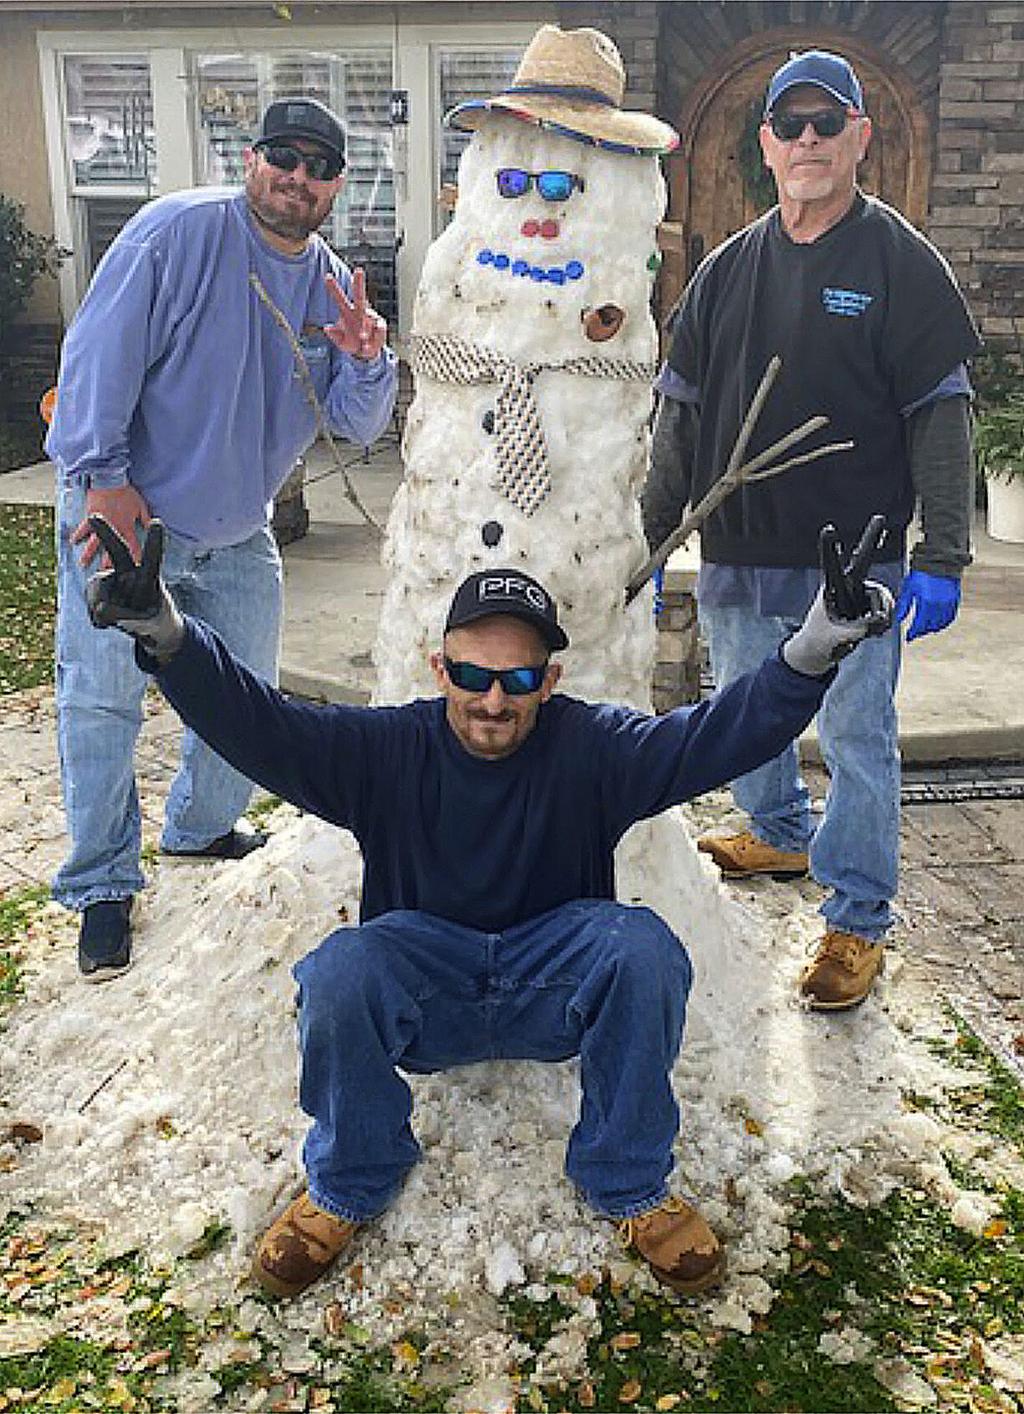 STEVE FLORES: Do you want to build a snowman?, Steve Flores